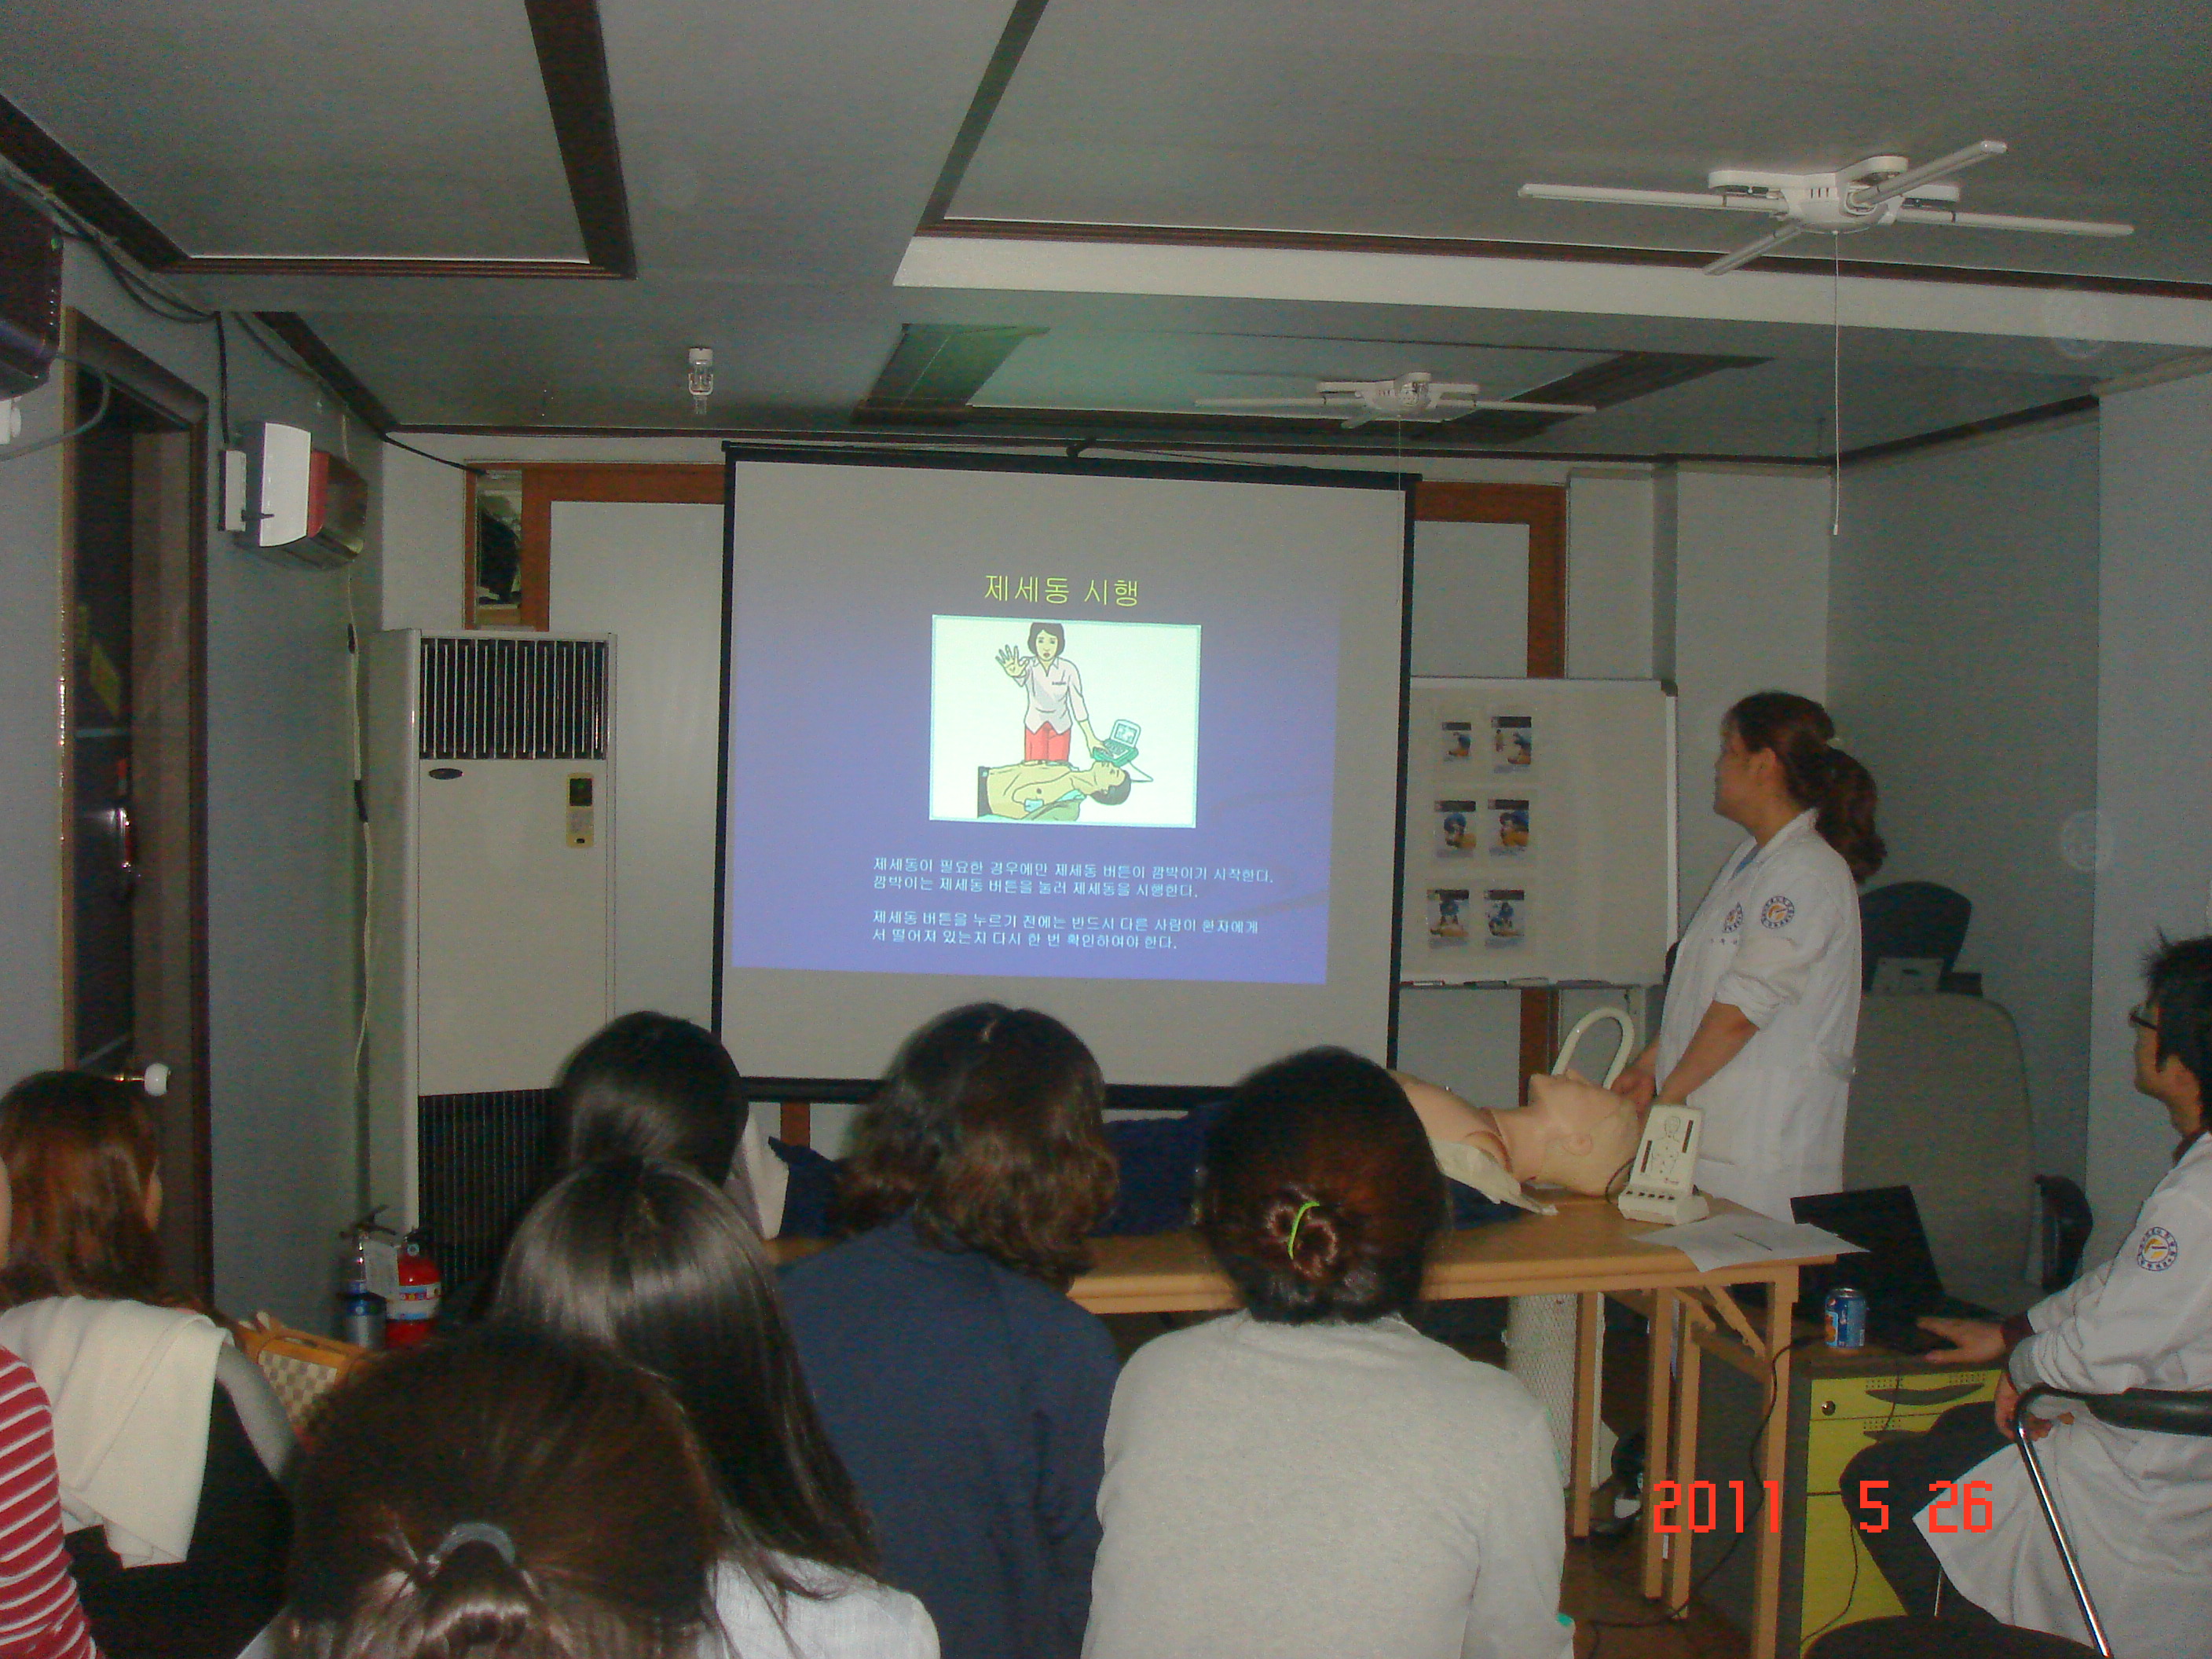 [강북점] 2011년 5월 26일 - 전직원 직무교육 실시 (심폐소생술, CPR) 게시글의 5번째 첨부파일입니다.